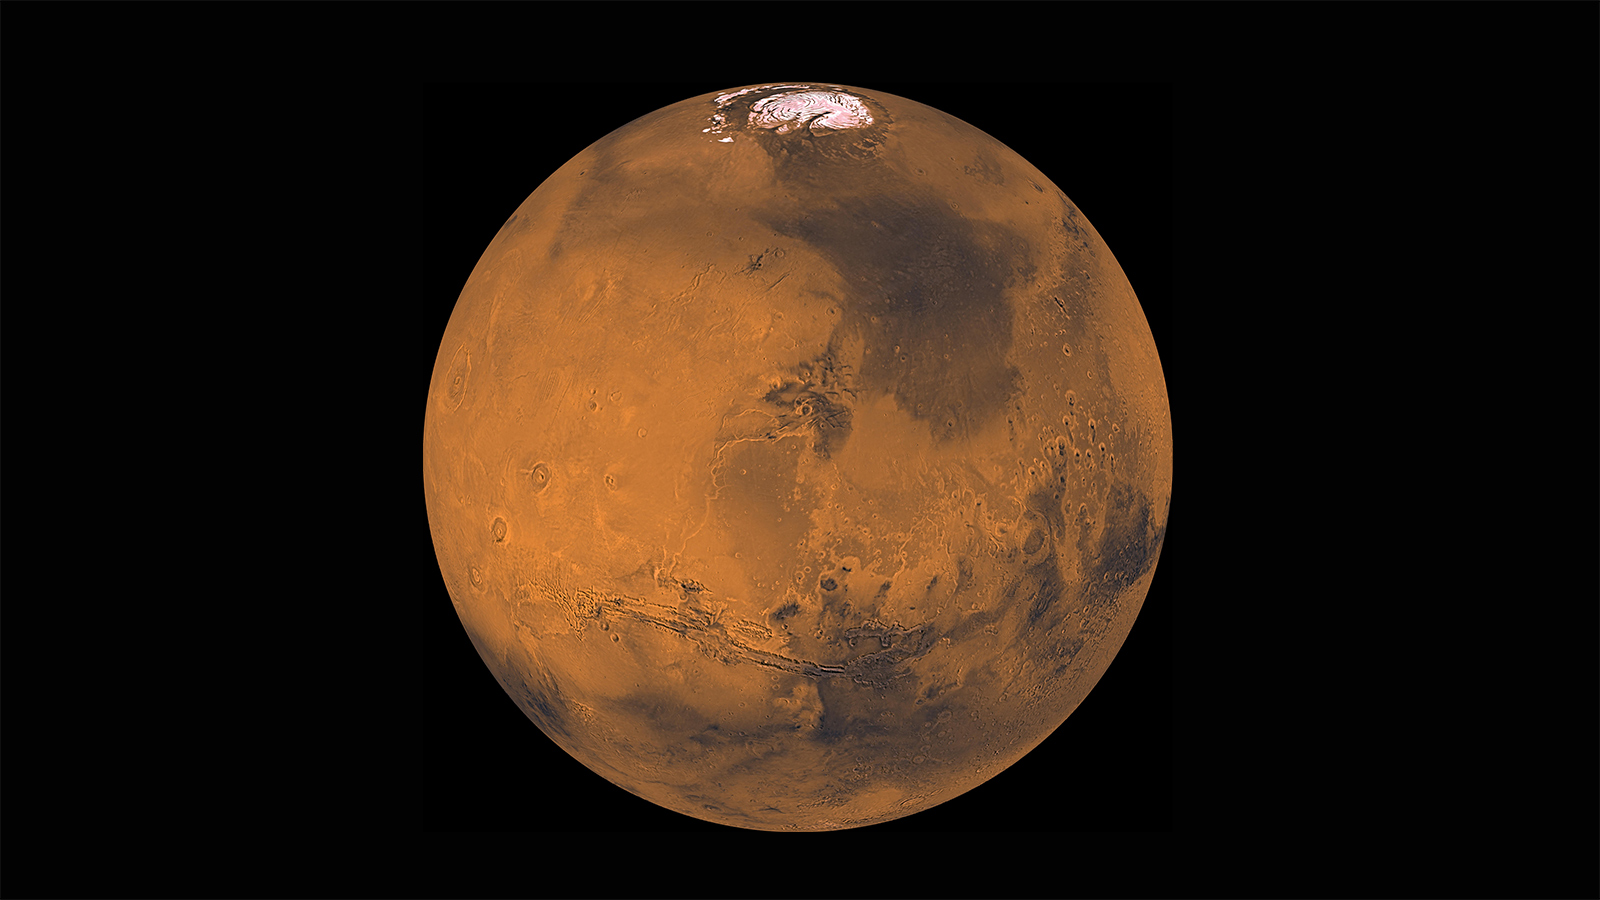 Mars a gitme süresini neredeyse bir aya düşüren bir sistem tasarlandı!